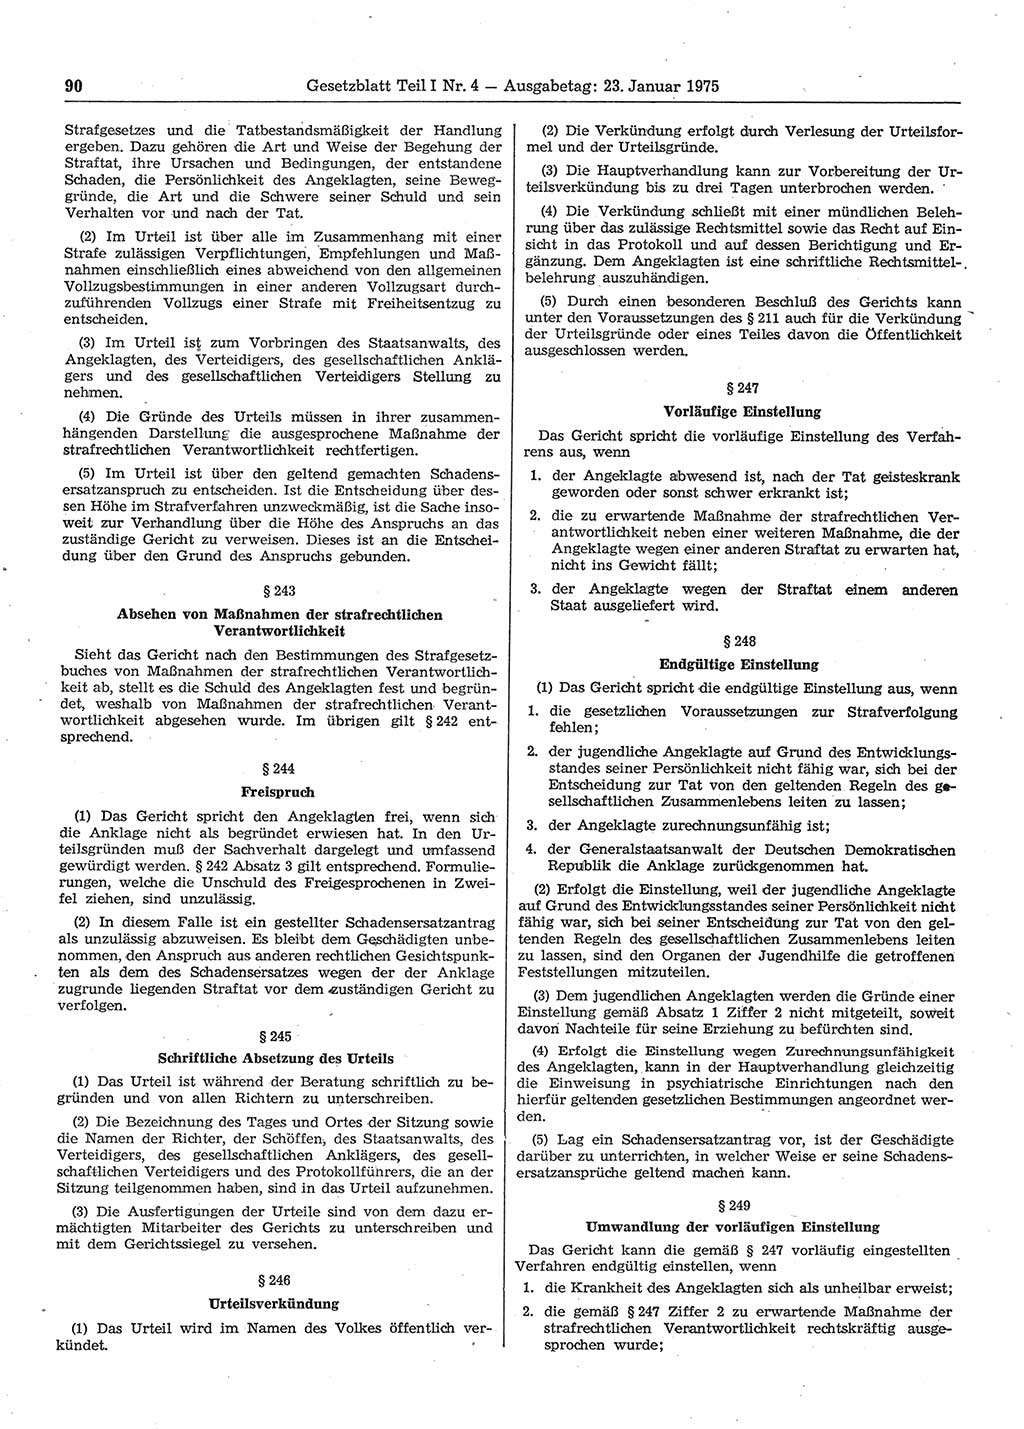 Gesetzblatt (GBl.) der Deutschen Demokratischen Republik (DDR) Teil Ⅰ 1975, Seite 90 (GBl. DDR Ⅰ 1975, S. 90)